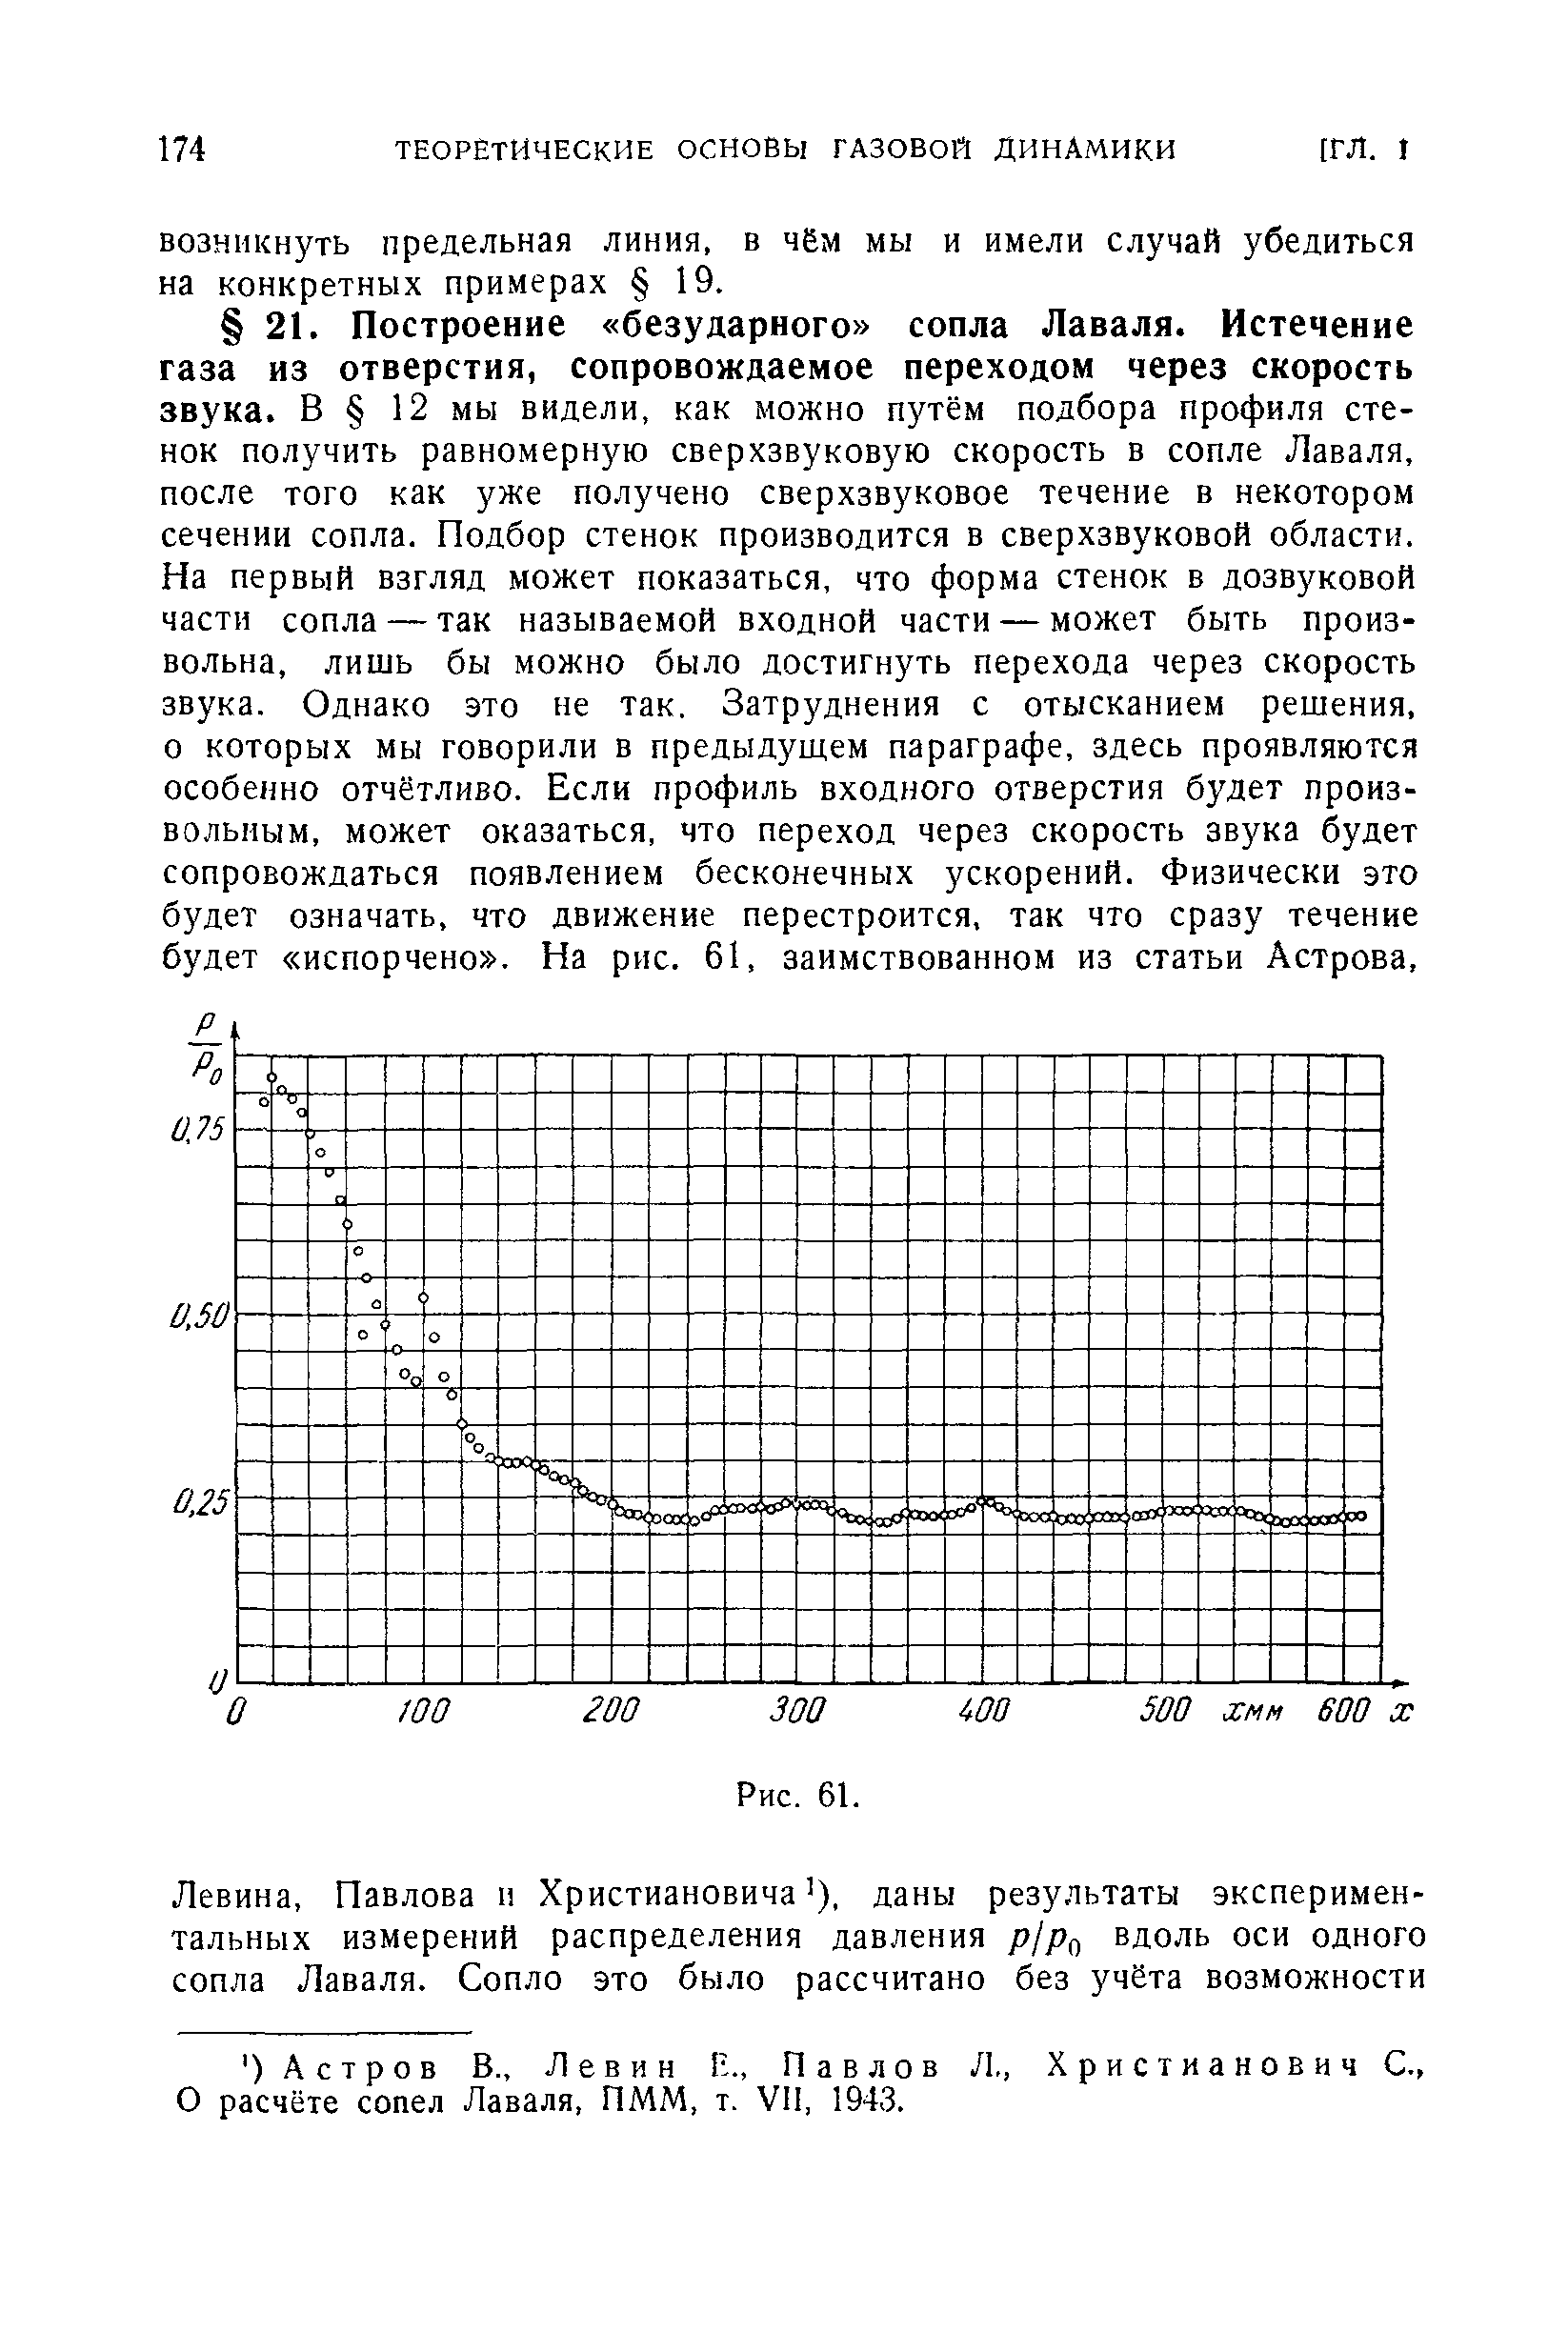 О расчёте сопел Лаваля, ПММ, т. VII, 1943.
